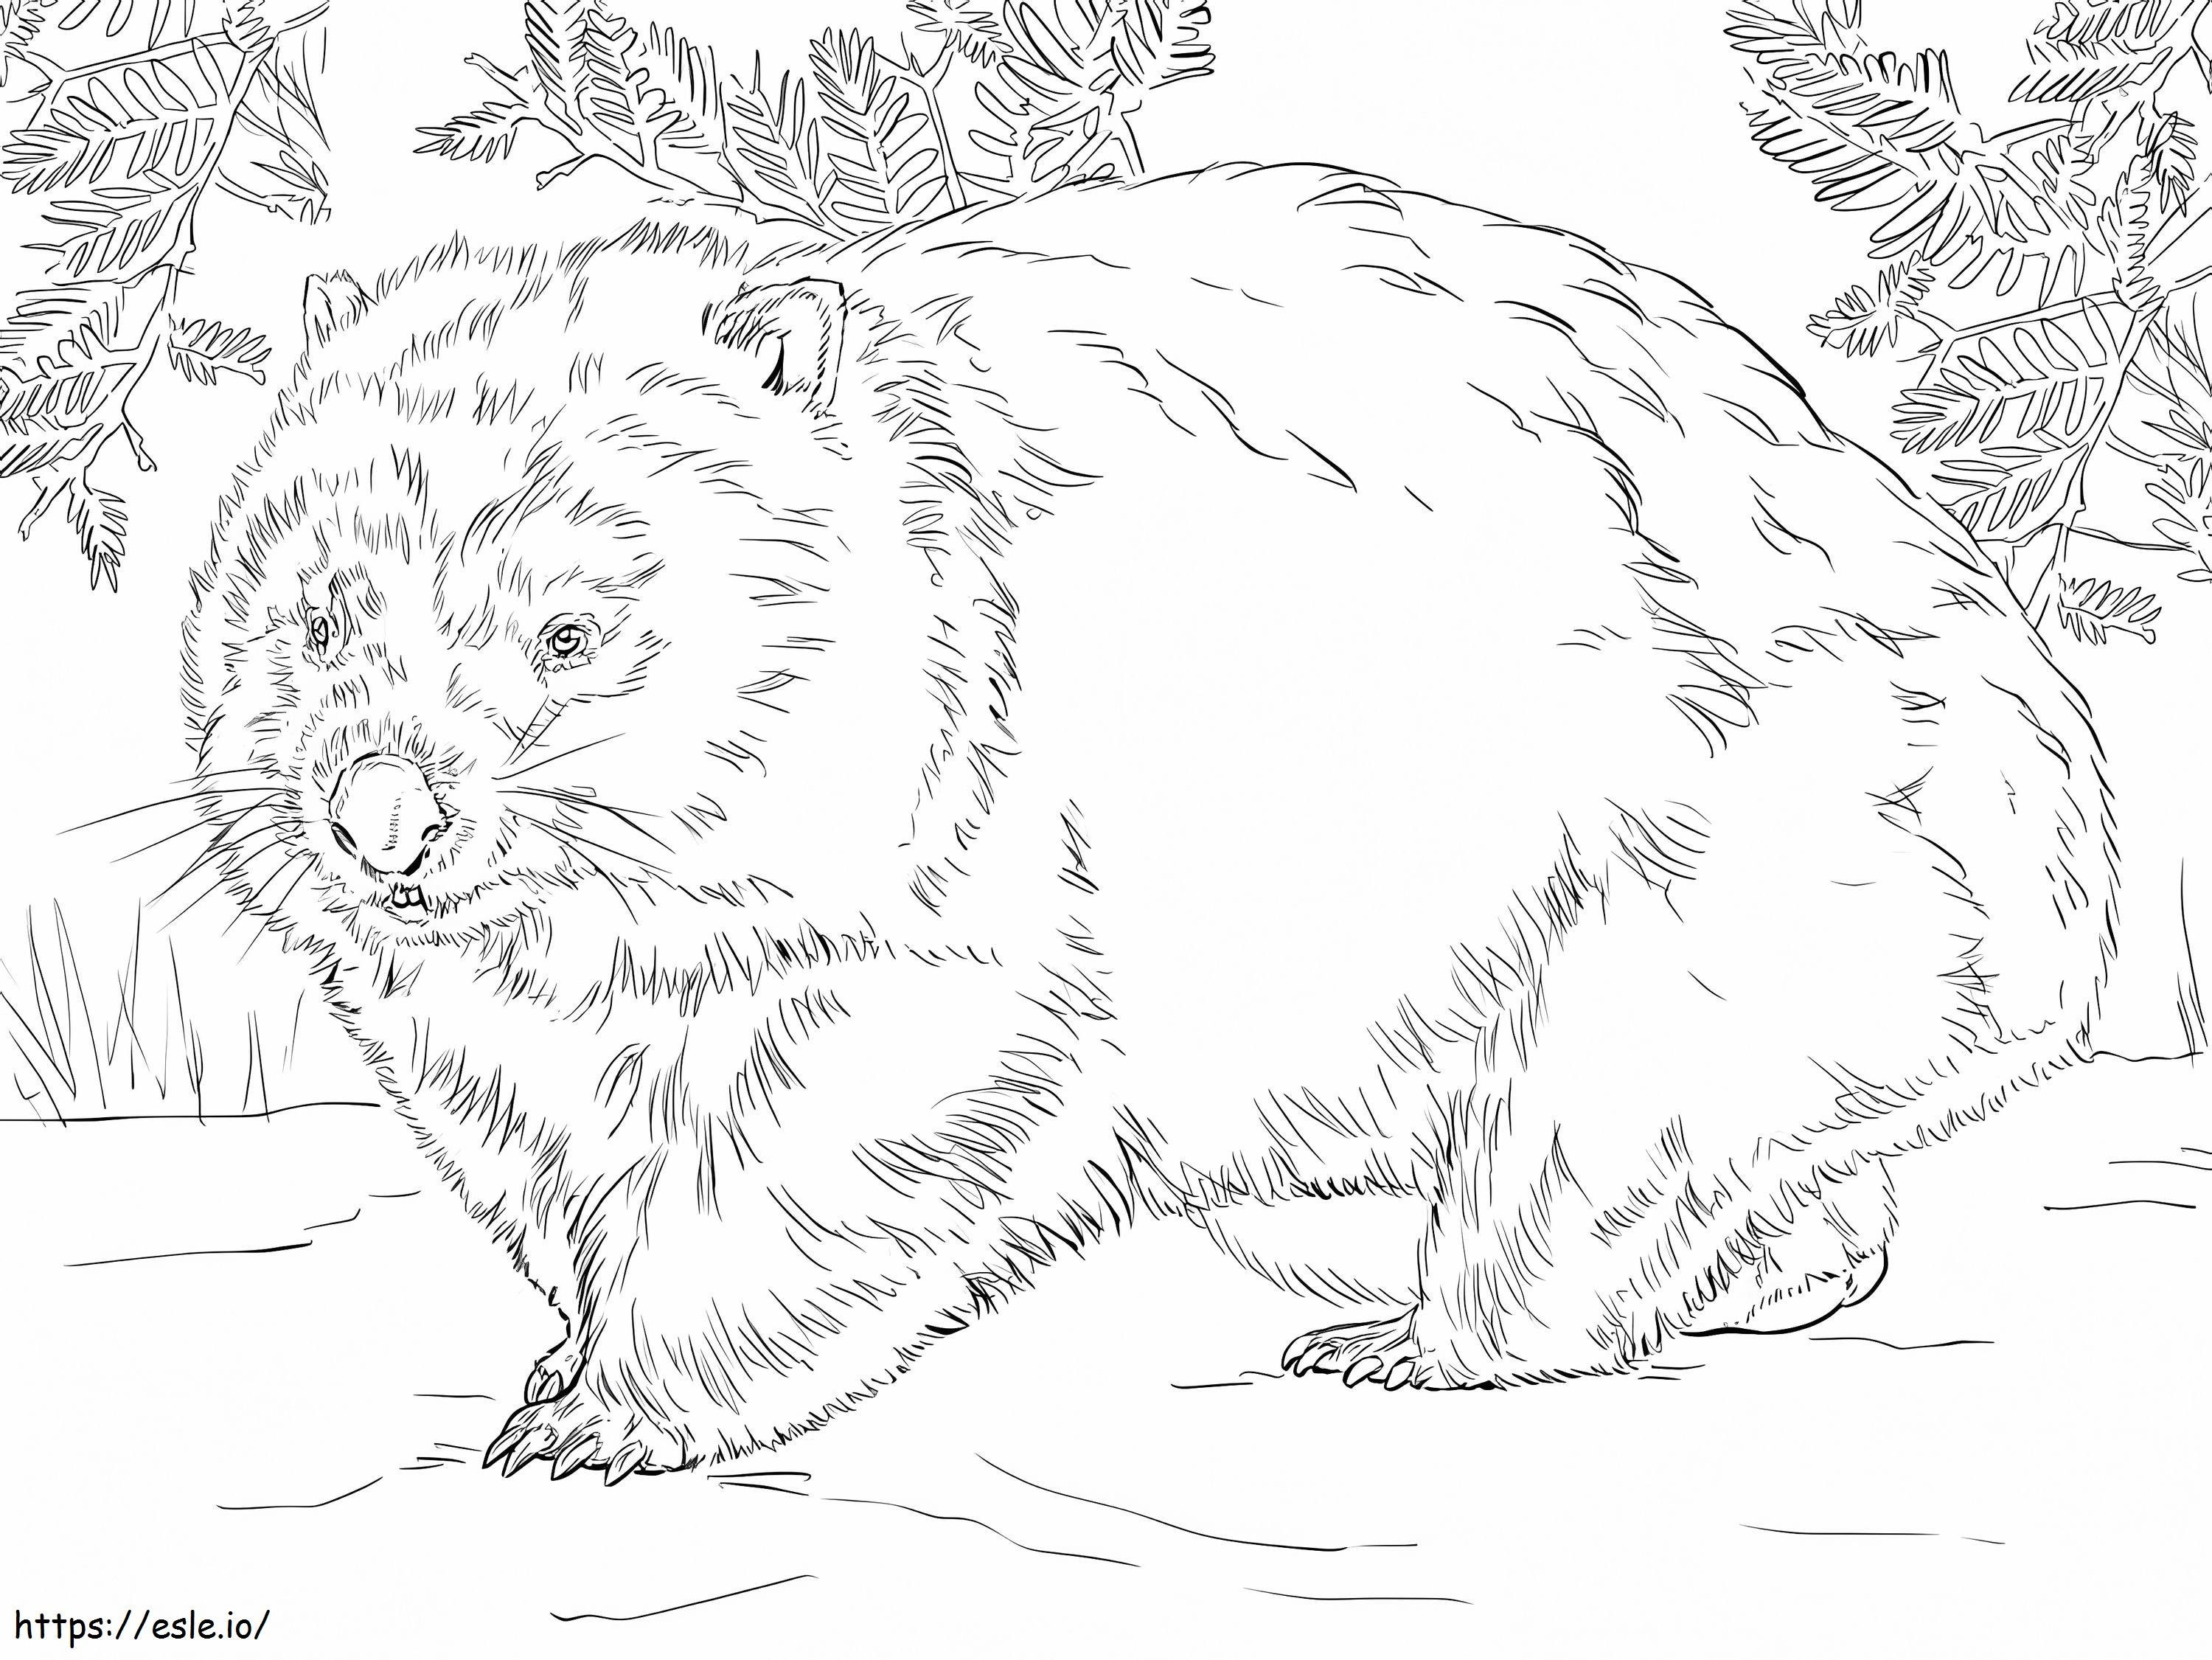 Gruby Wombat kolorowanka